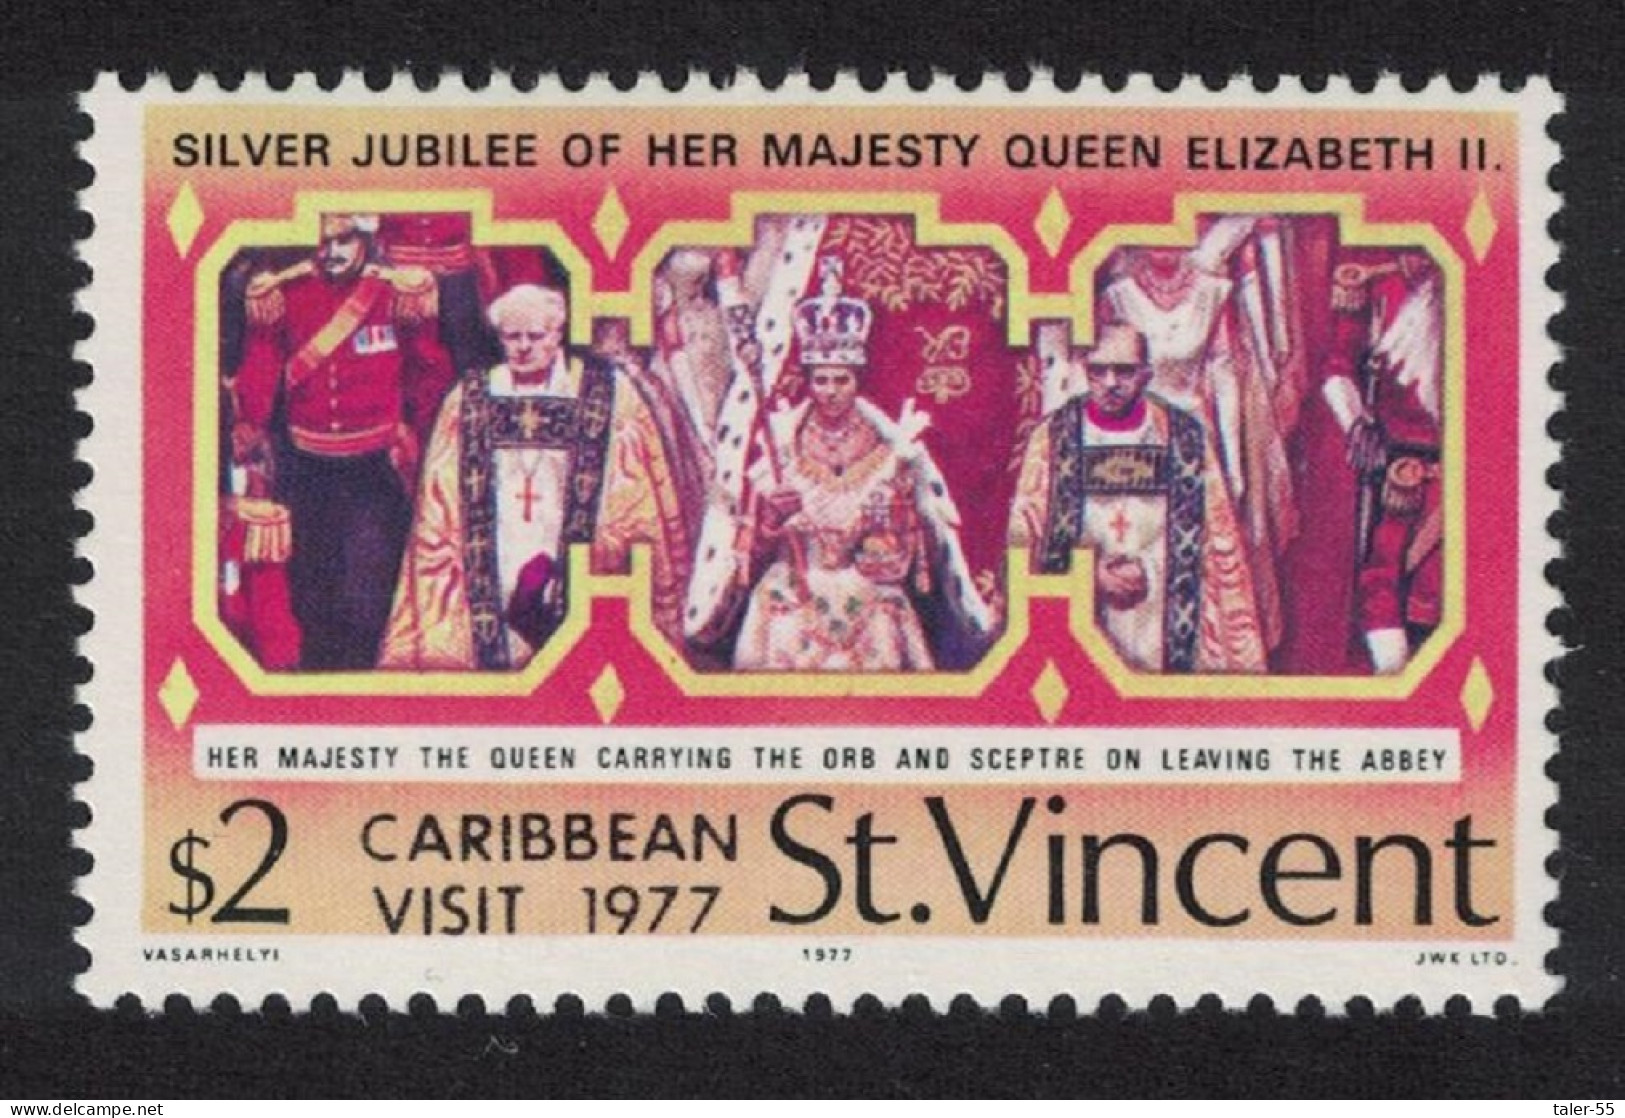 St. Vincent Royal Visit Optd 'CARIBBEAN VISIT 1977' 1977 MNH SG#540 - St.Vincent (...-1979)